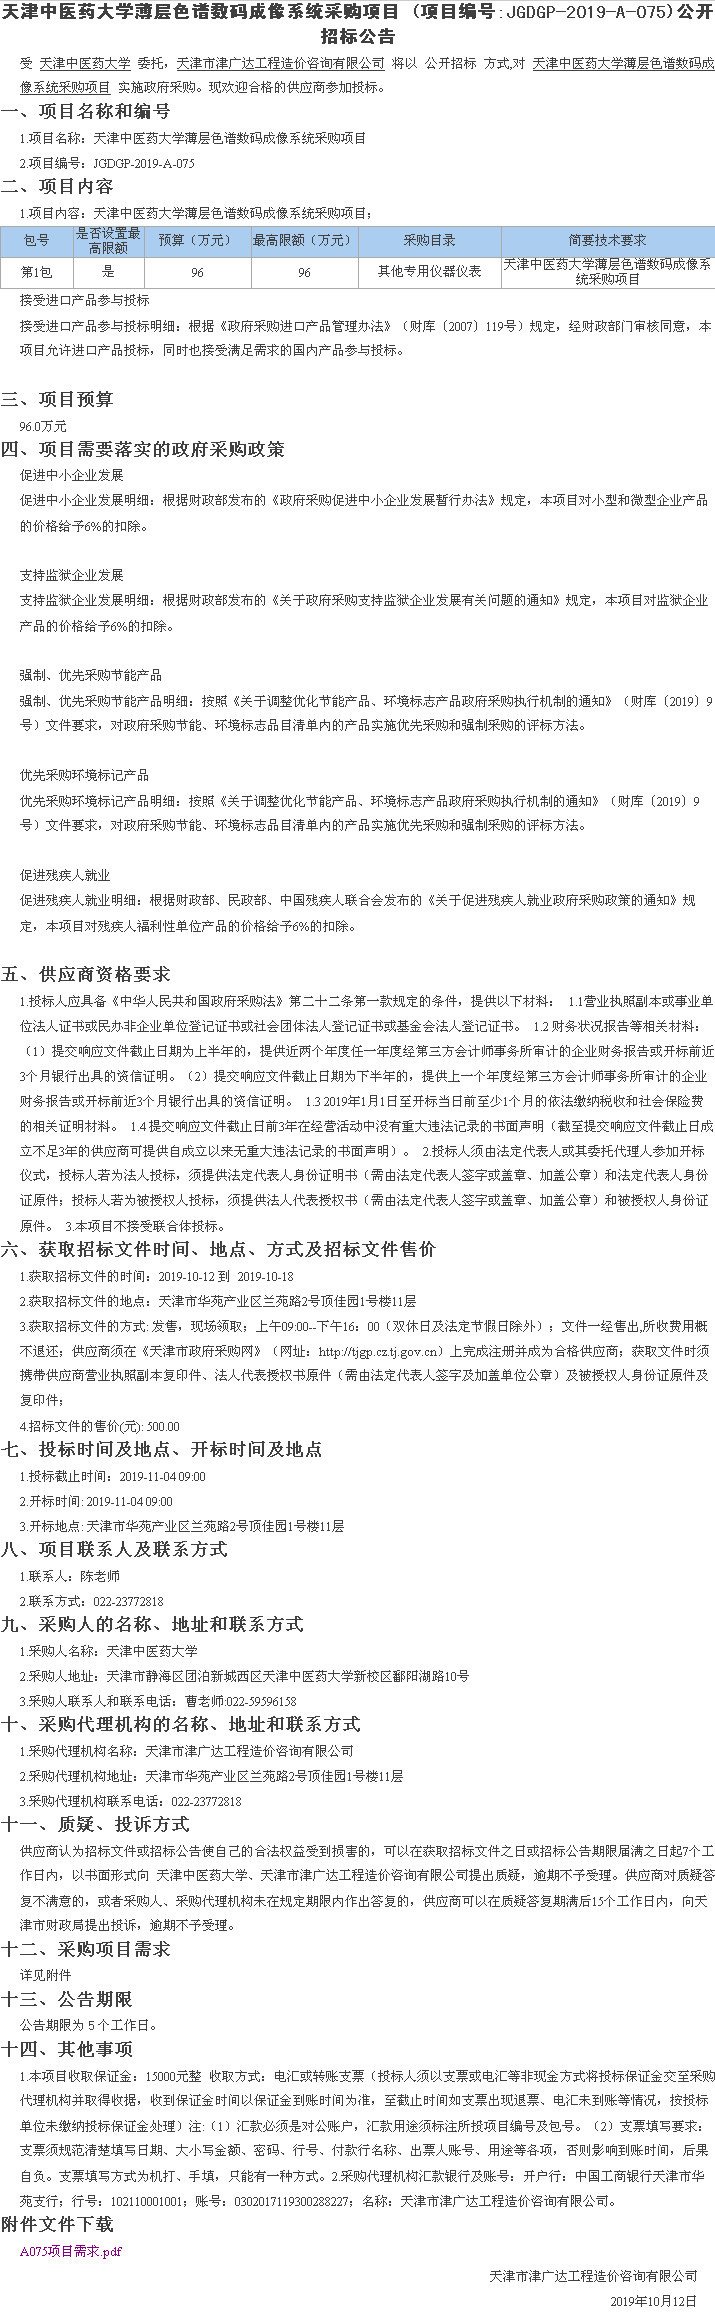 天津中医药大学薄层色谱数码成像系统采购项目(图1)